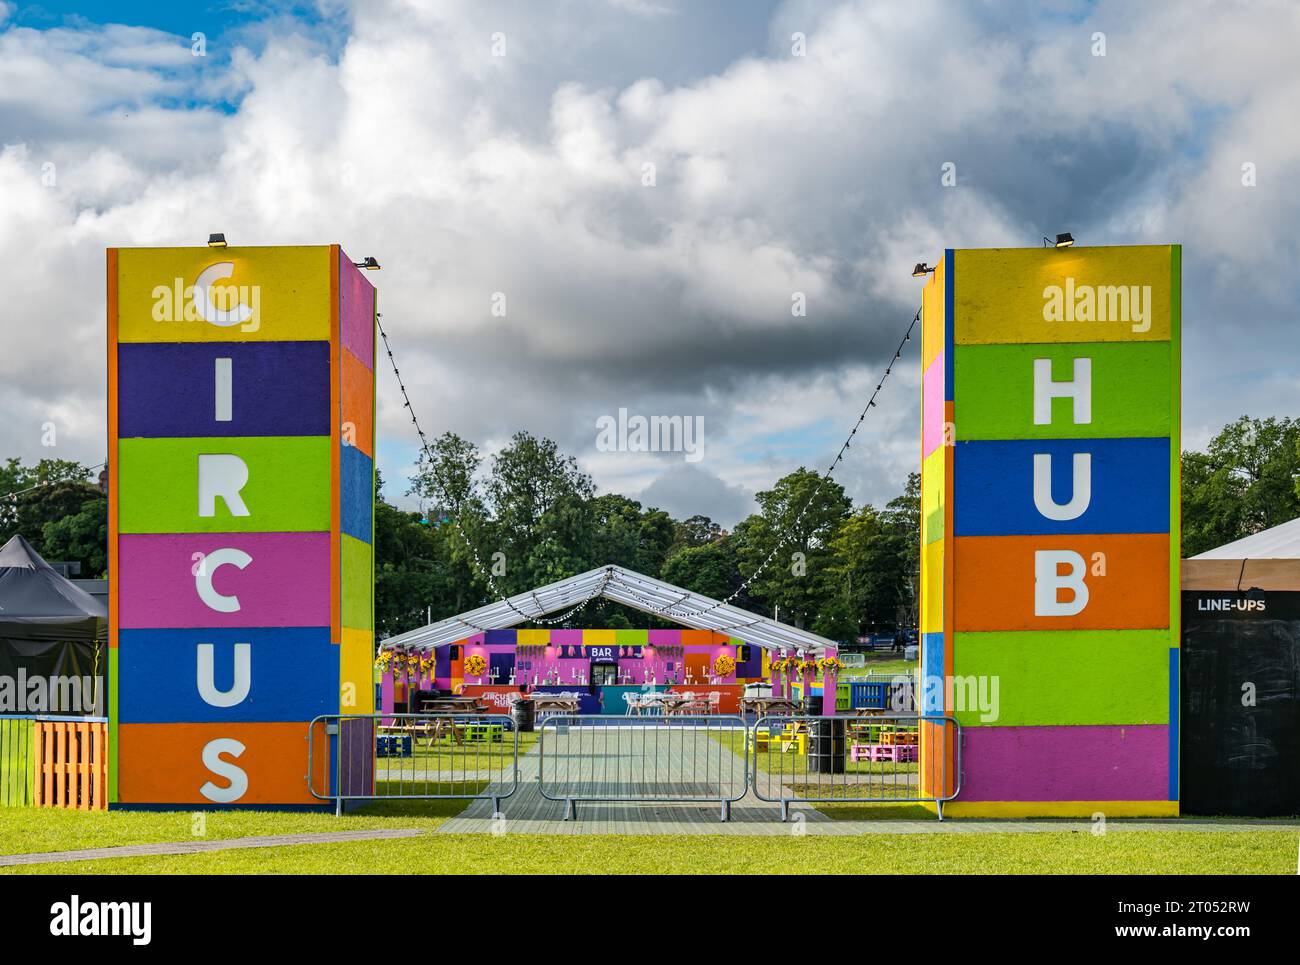 Circus Hub sur l'entrée de Meadows pendant le Festival d'Édimbourg Fringe, Écosse, Royaume-Uni Banque D'Images